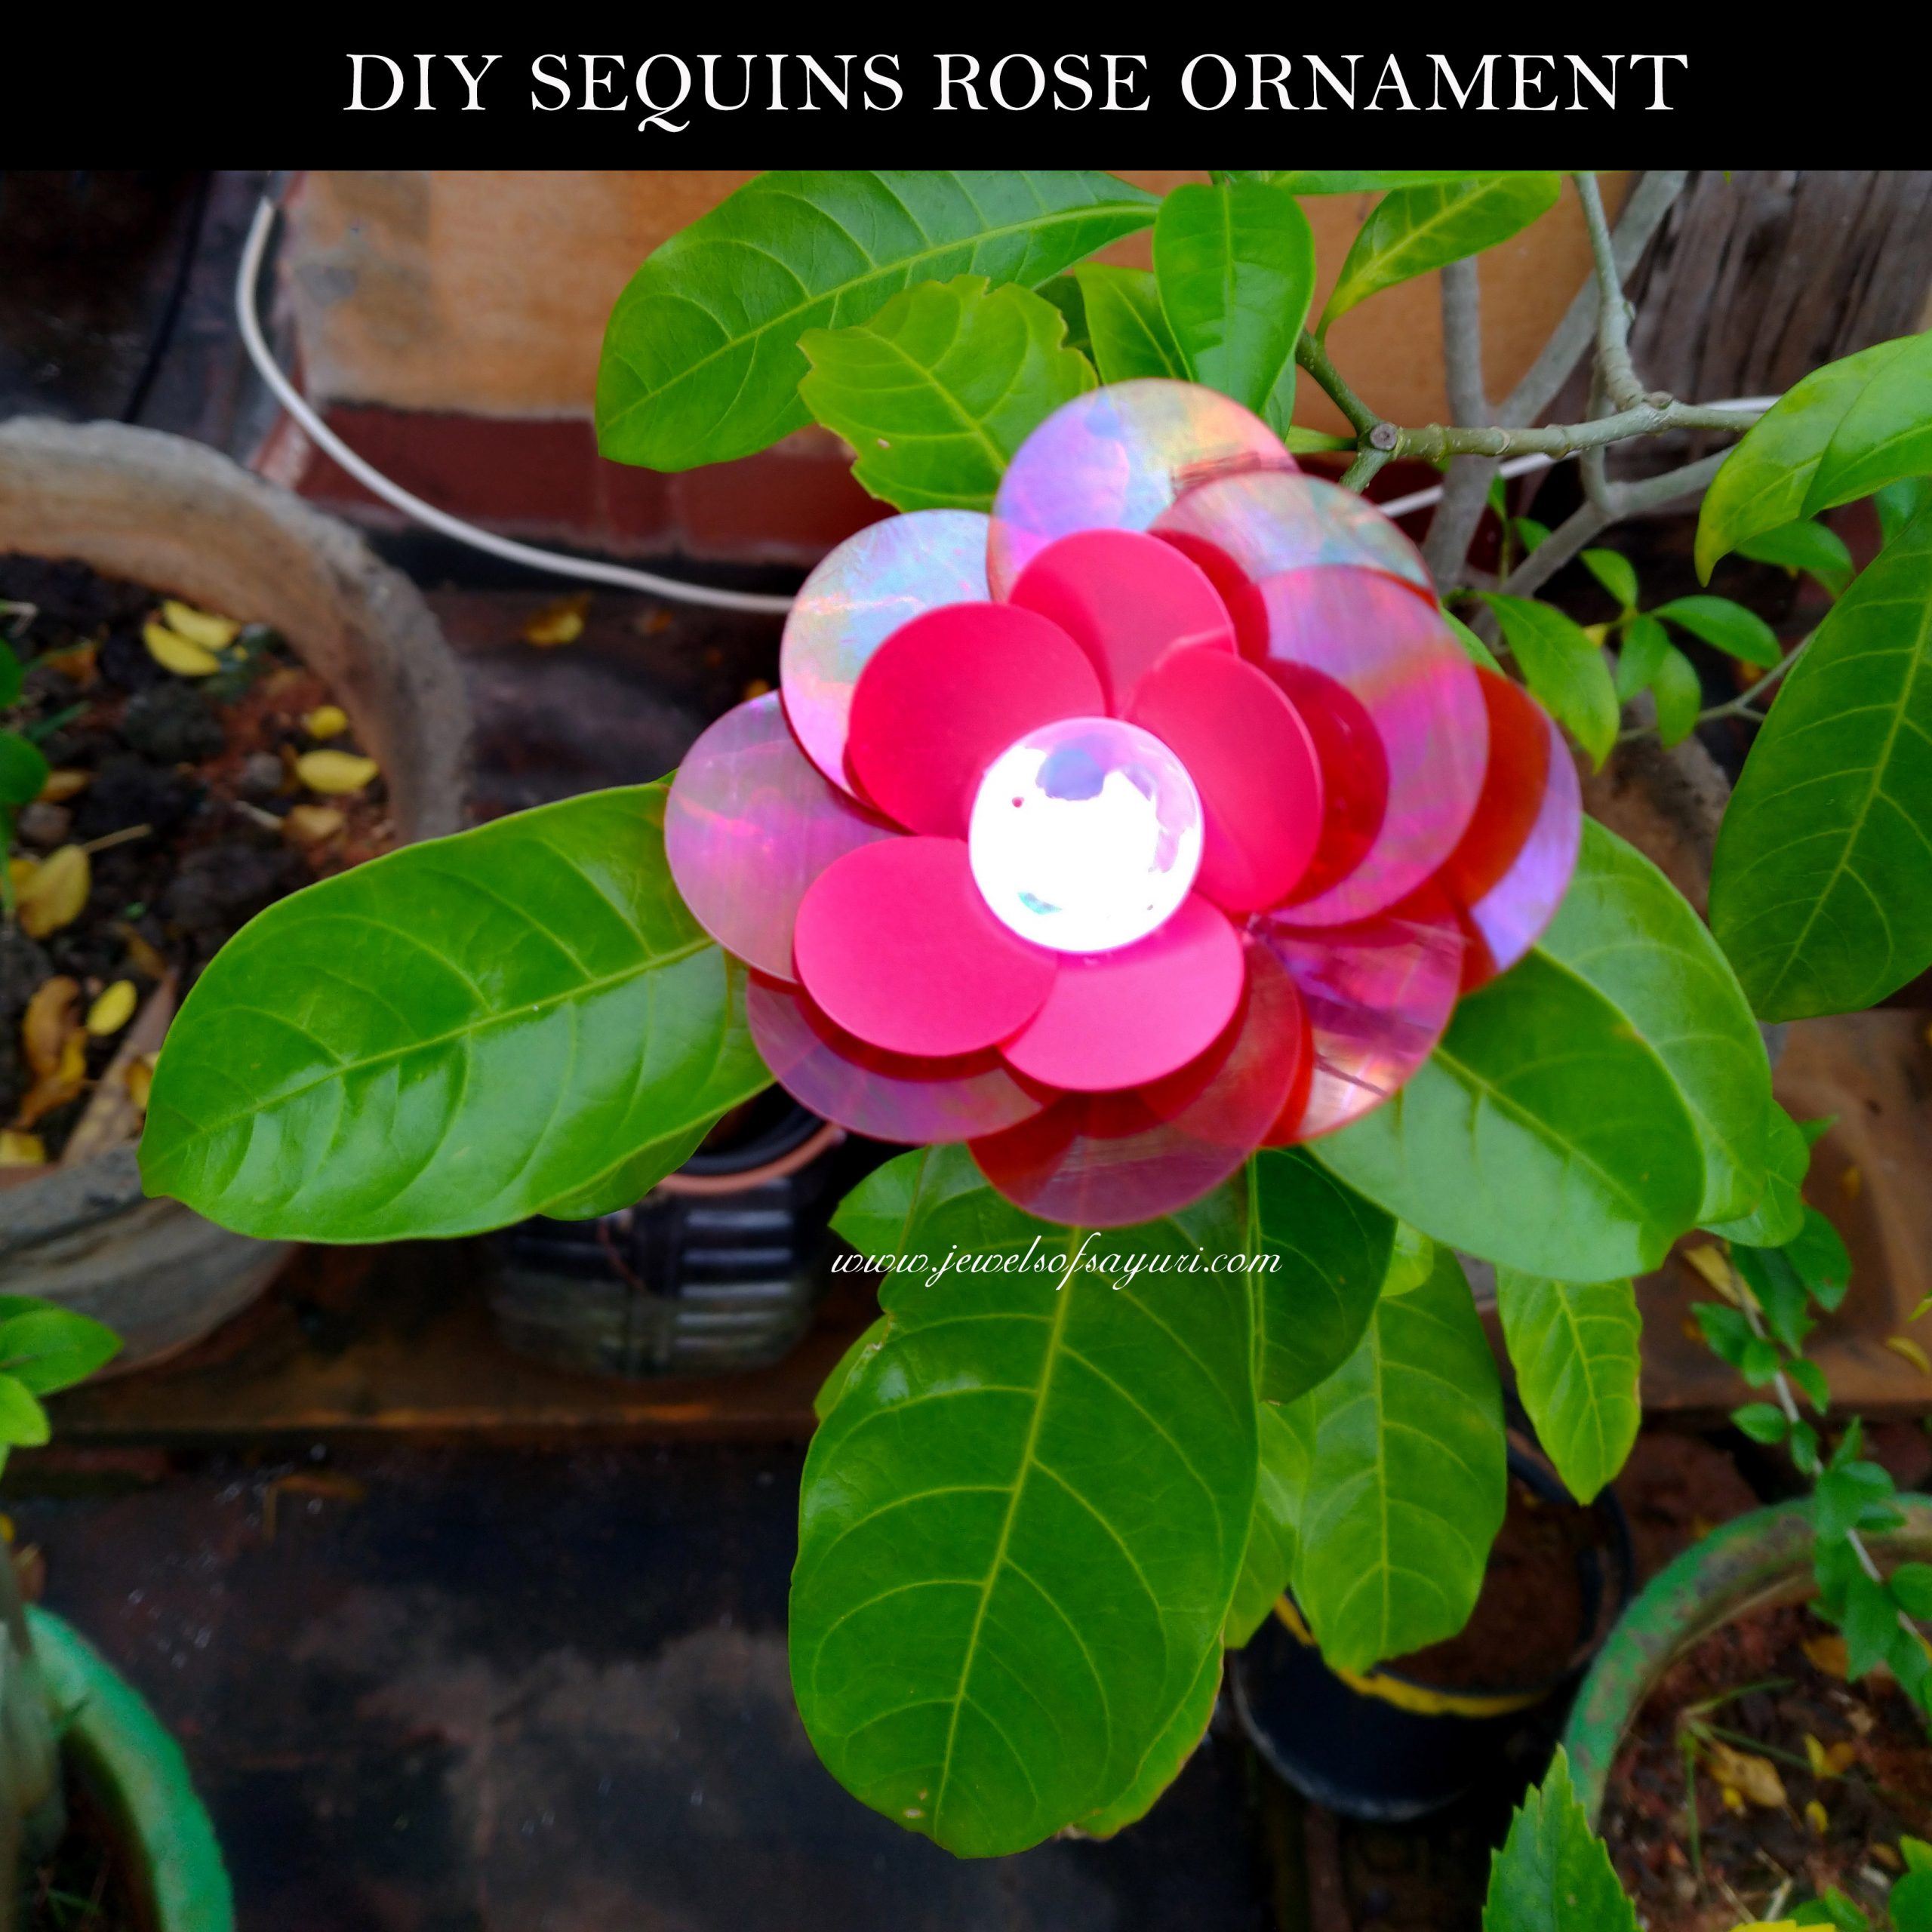 DIY sequins rose ornament